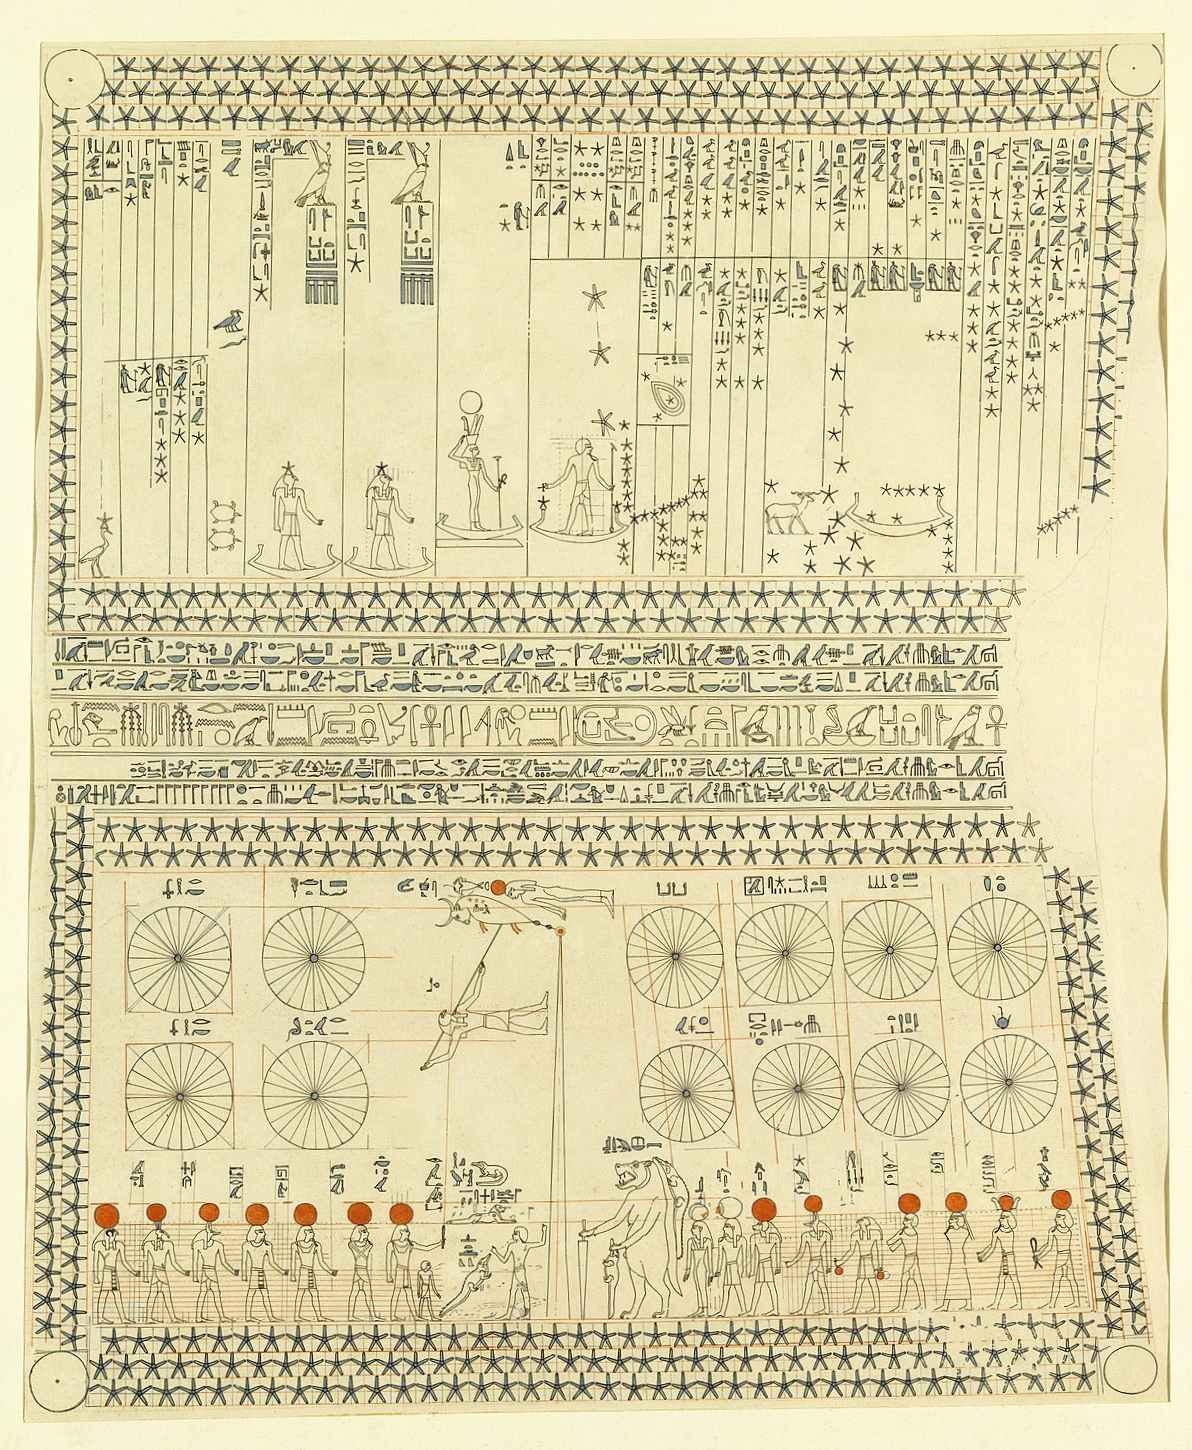 સેનેનમુટની રહસ્યમય કબર અને પ્રાચીન ઇજિપ્ત 4માં સૌથી પહેલો જાણીતો તારાનો નકશો